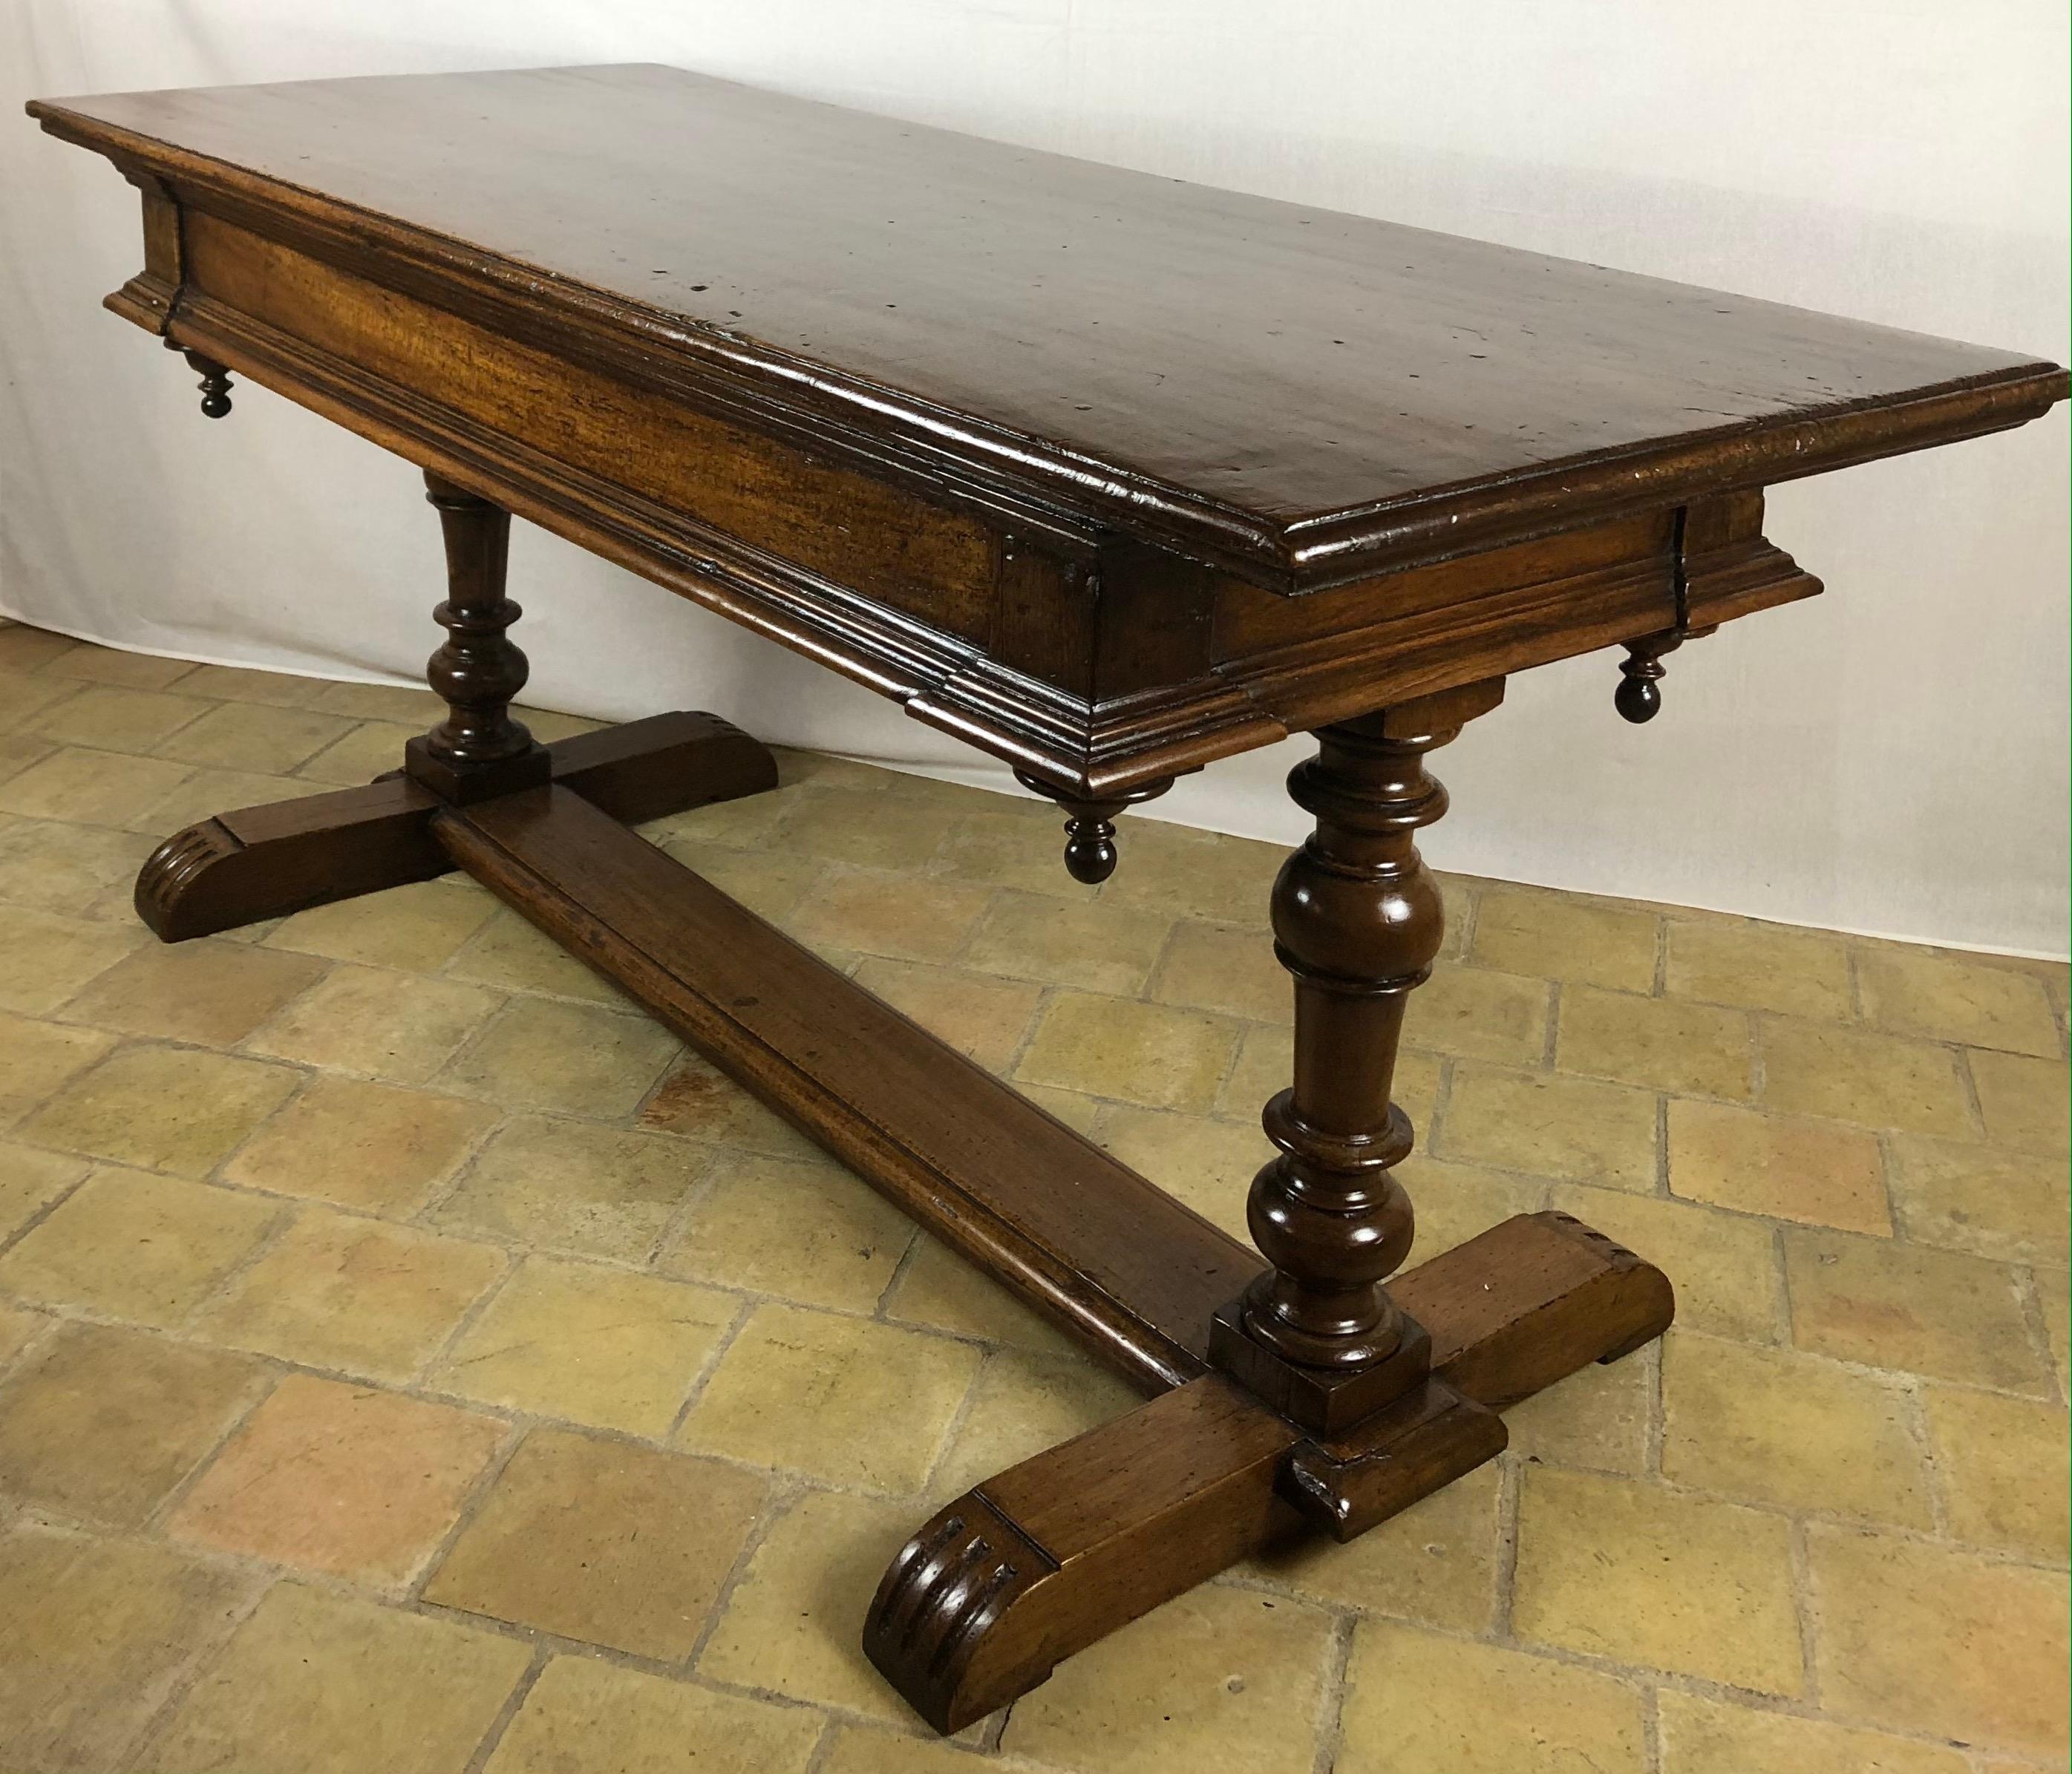 Eine sehr gute Qualität 18. Jahrhundert Französisch Louis XIII Stil rechteckige Sofa Konsole oder Display-Tabelle. Dieser Tisch ist aus starkem Walnussholz gefertigt und ist ein multifunktionaler Tisch. Er wird von zwei schönen gedrechselten Beinen